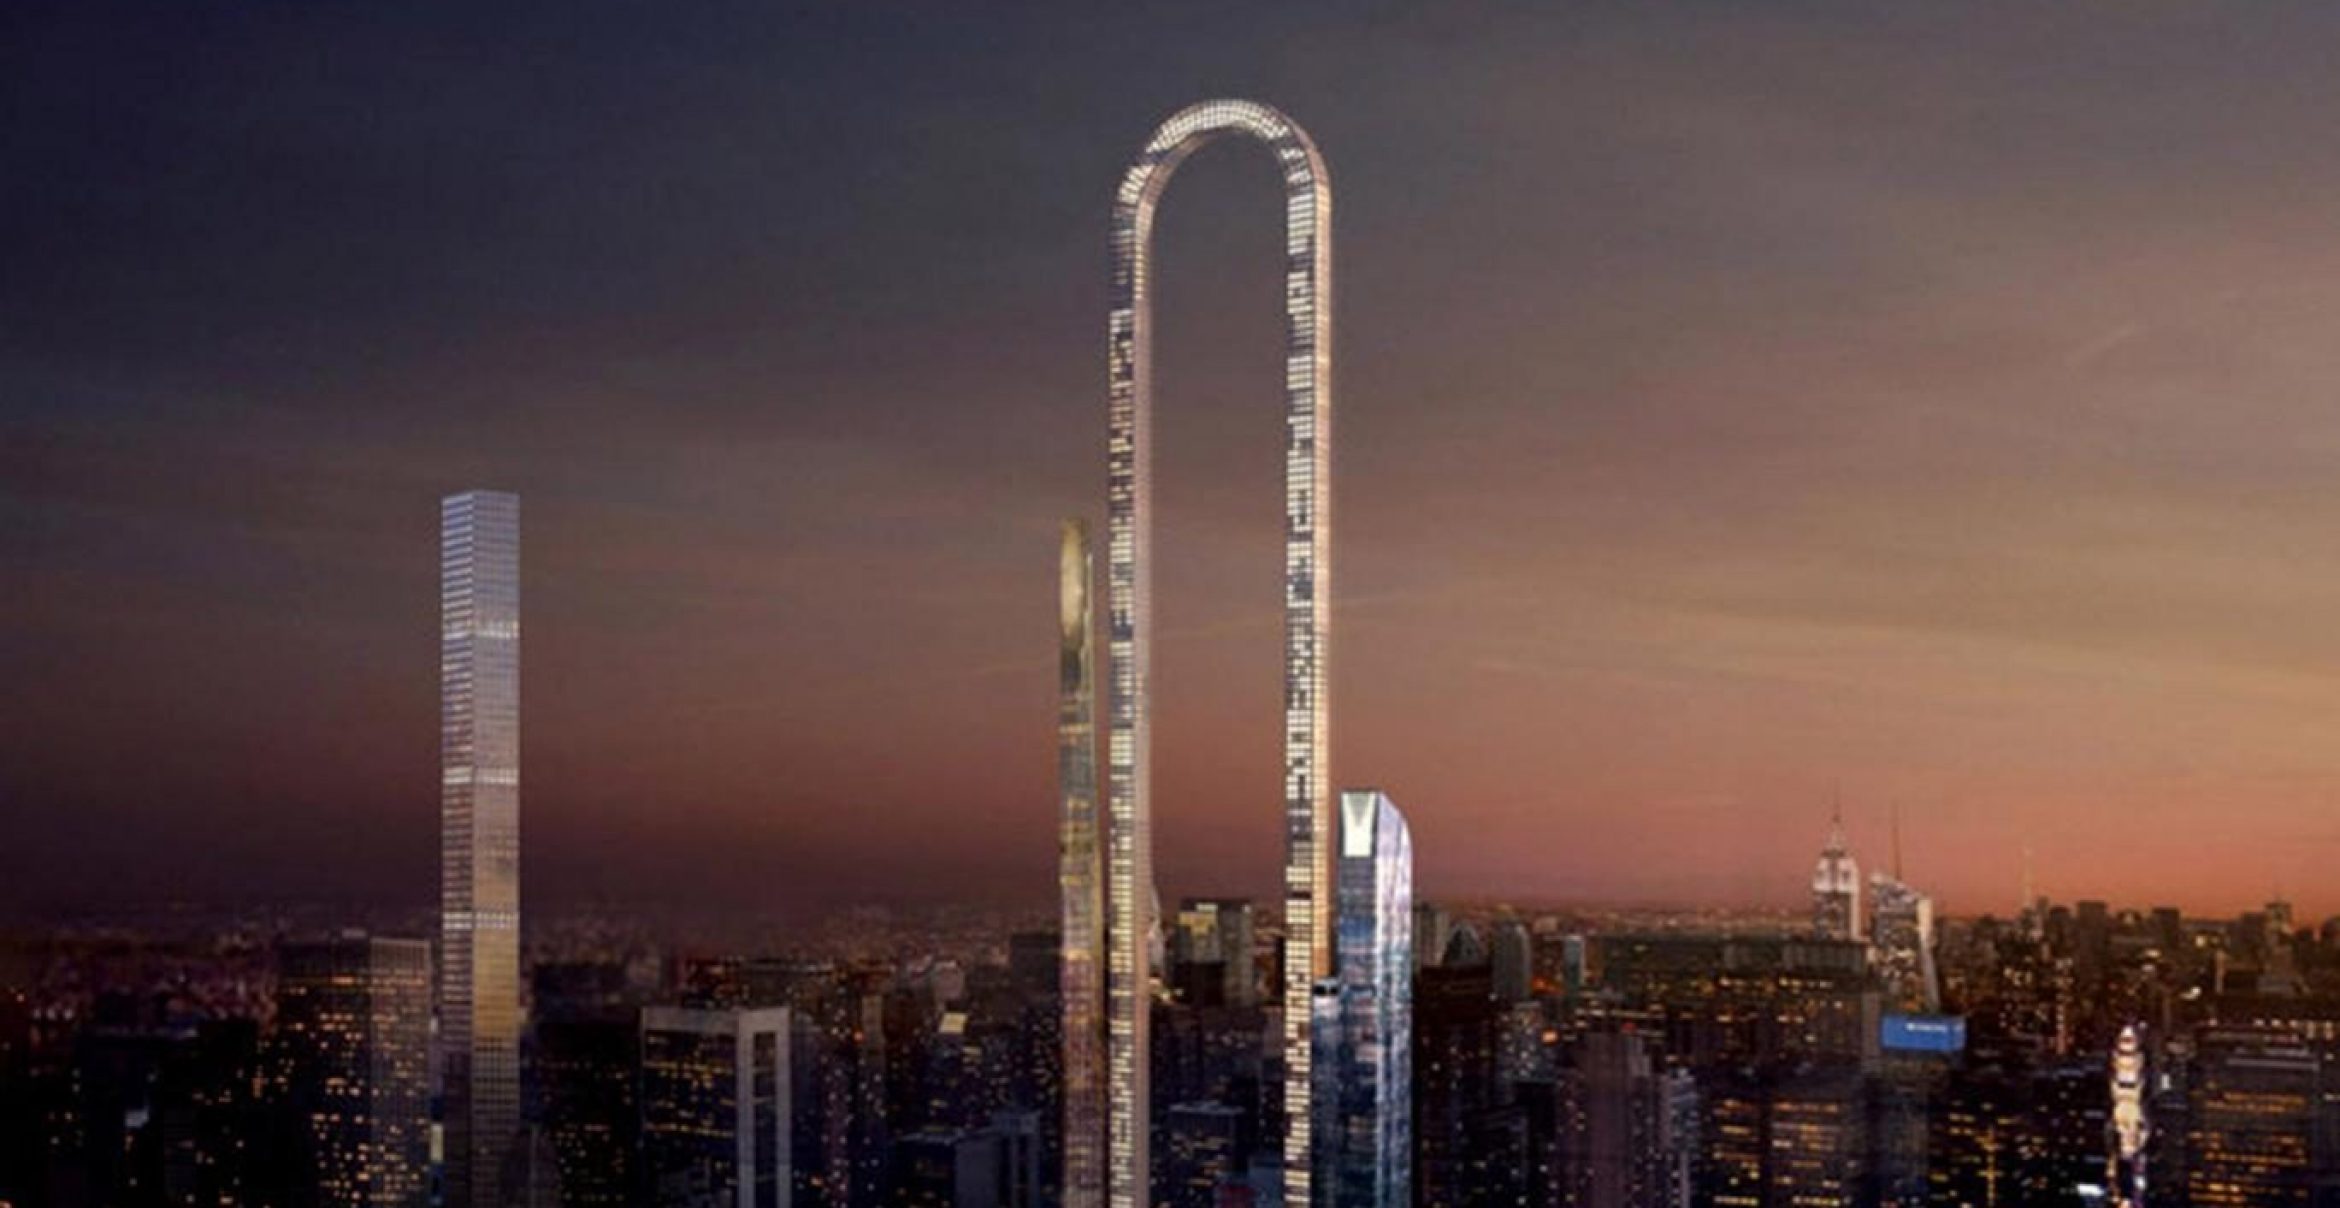 The Big Bend: Ein U-förmiger Wolkenkratzer für Manhattans Skyline